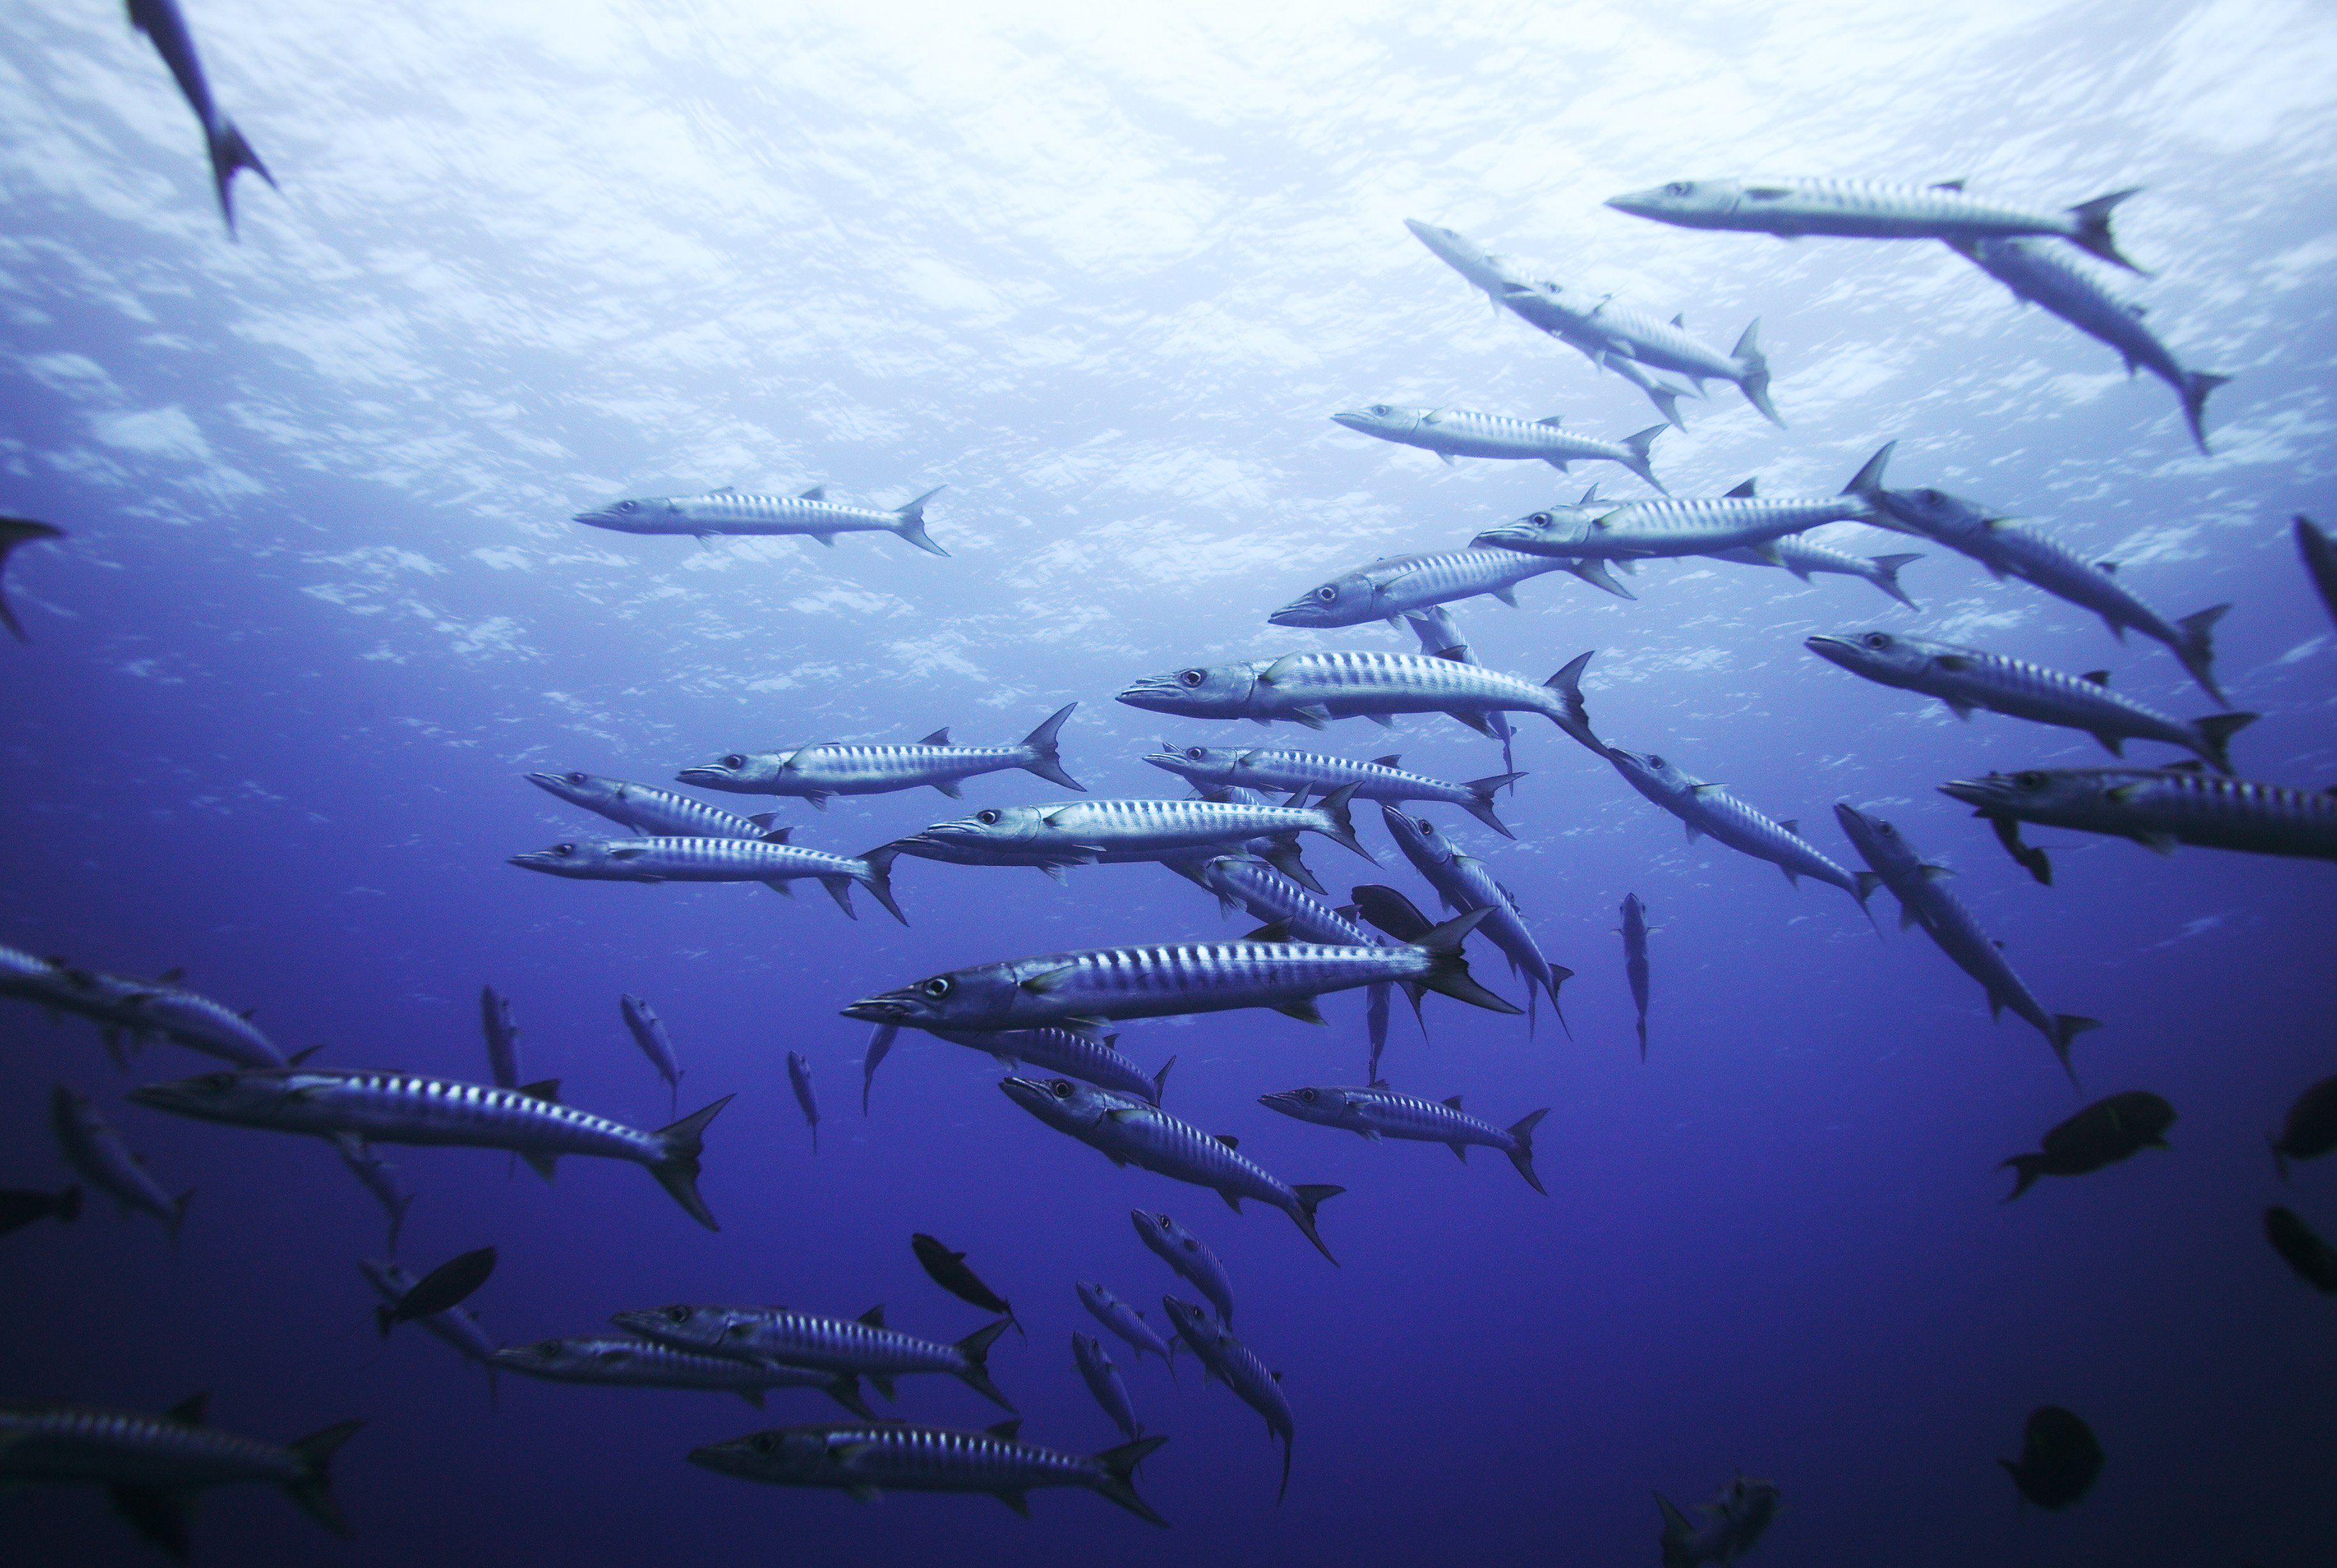 Сколько рыб водится в охотском море